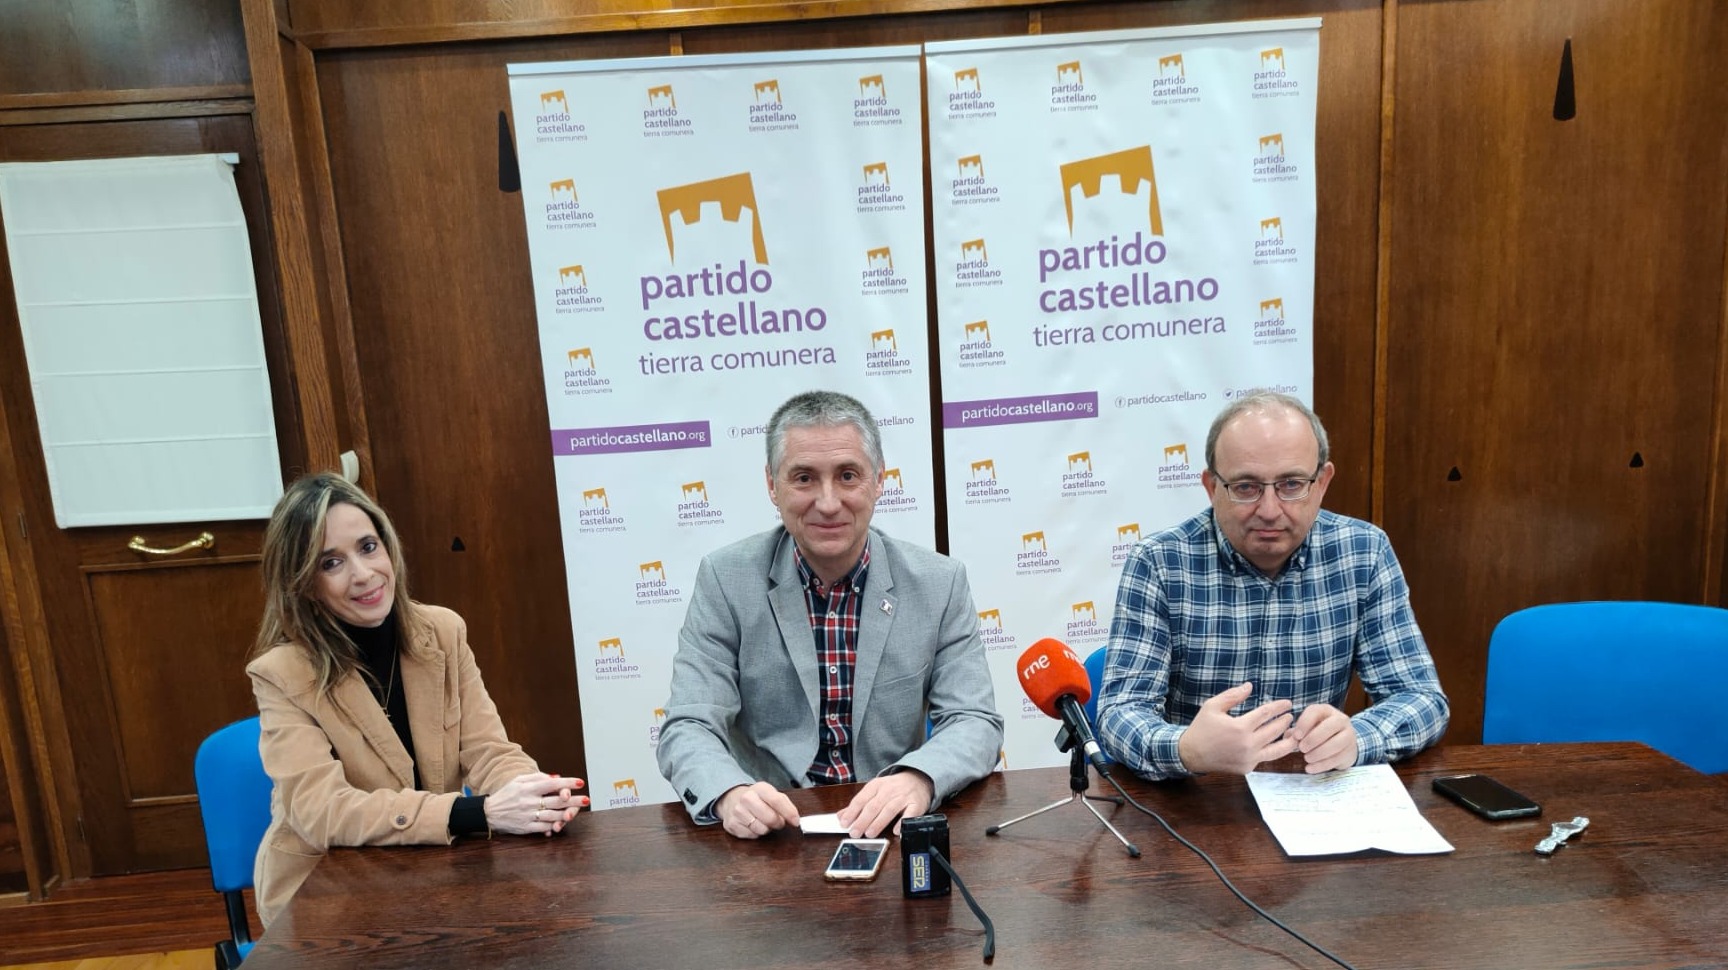 PC-Tierra Comunera concurrirá a las elecciones locales del mes de mayo en Burgos con el objetivo de mantenerse como tercera fuerza política en cargos